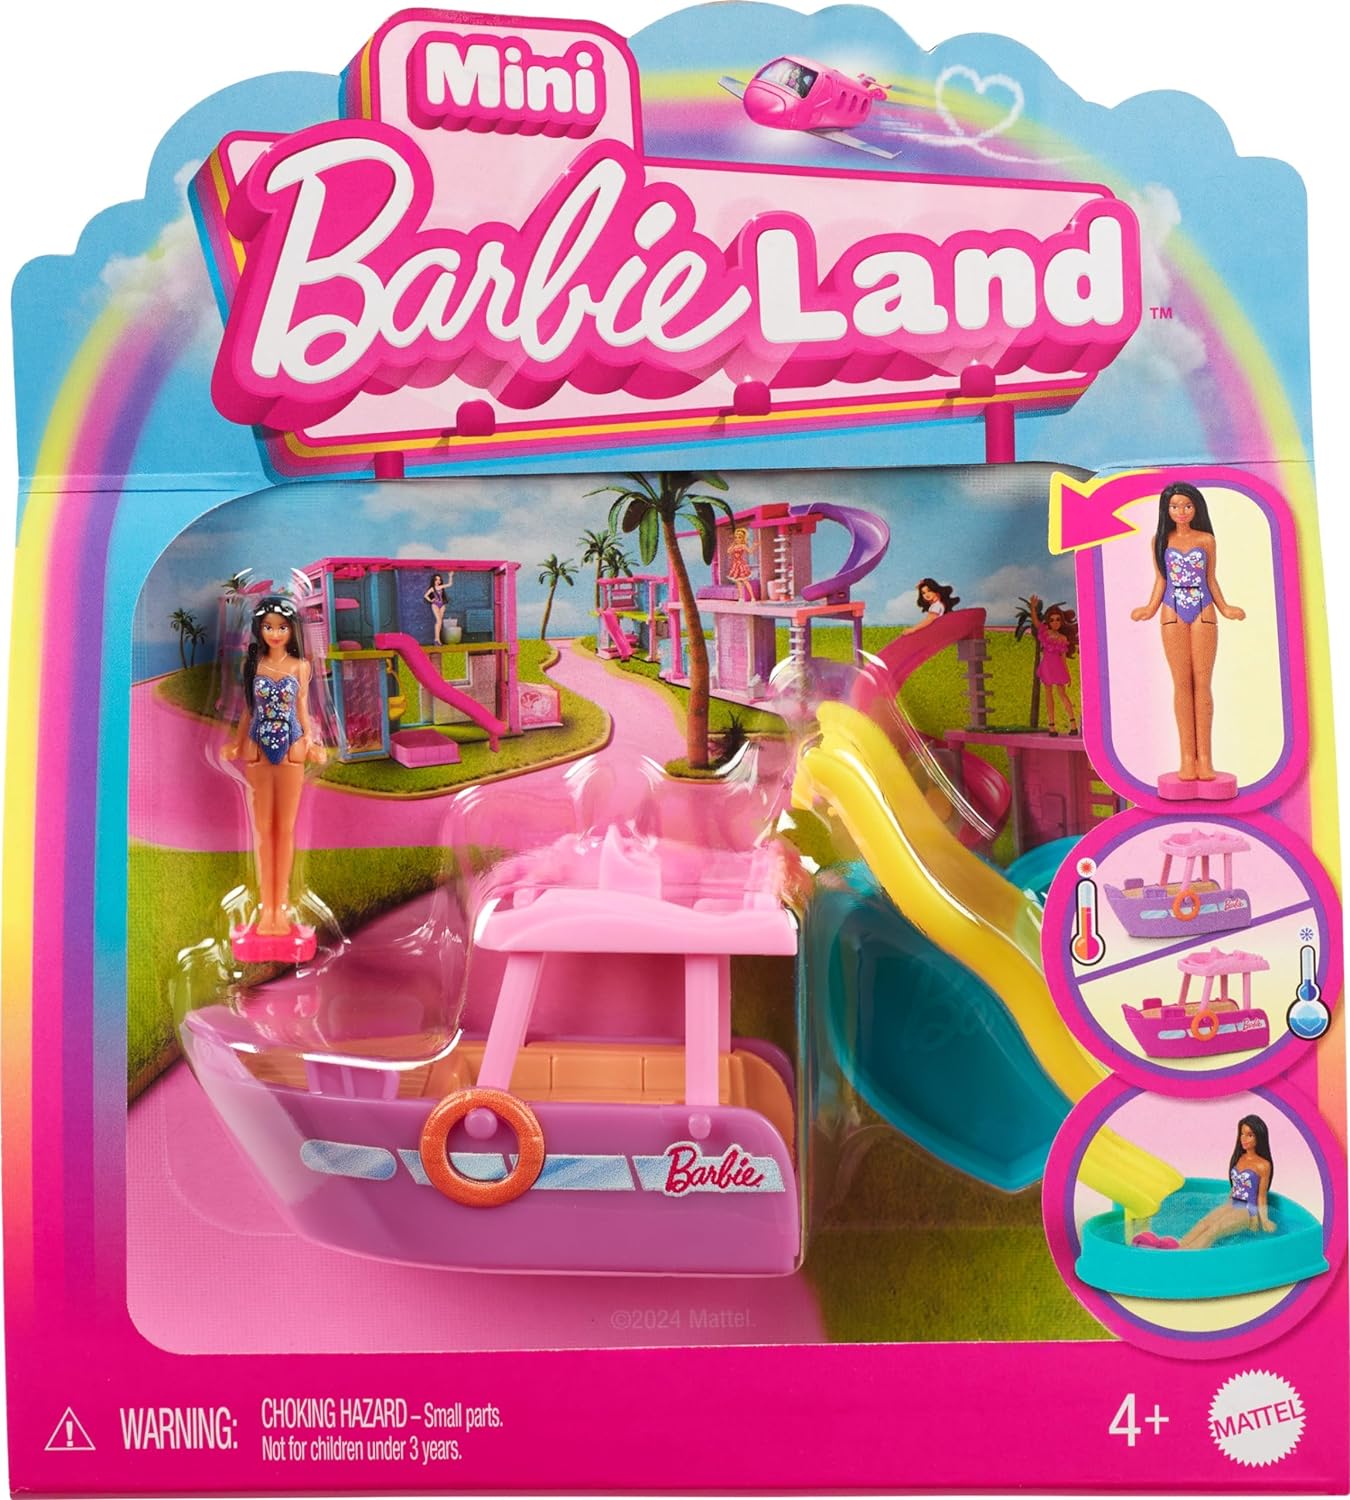 مجموعة باربي ميني باربي لاند ودمية ومركبات لعبة، دمية 1.5 بوصة وقارب أحلام مع مفاجأة متغيرة اللون